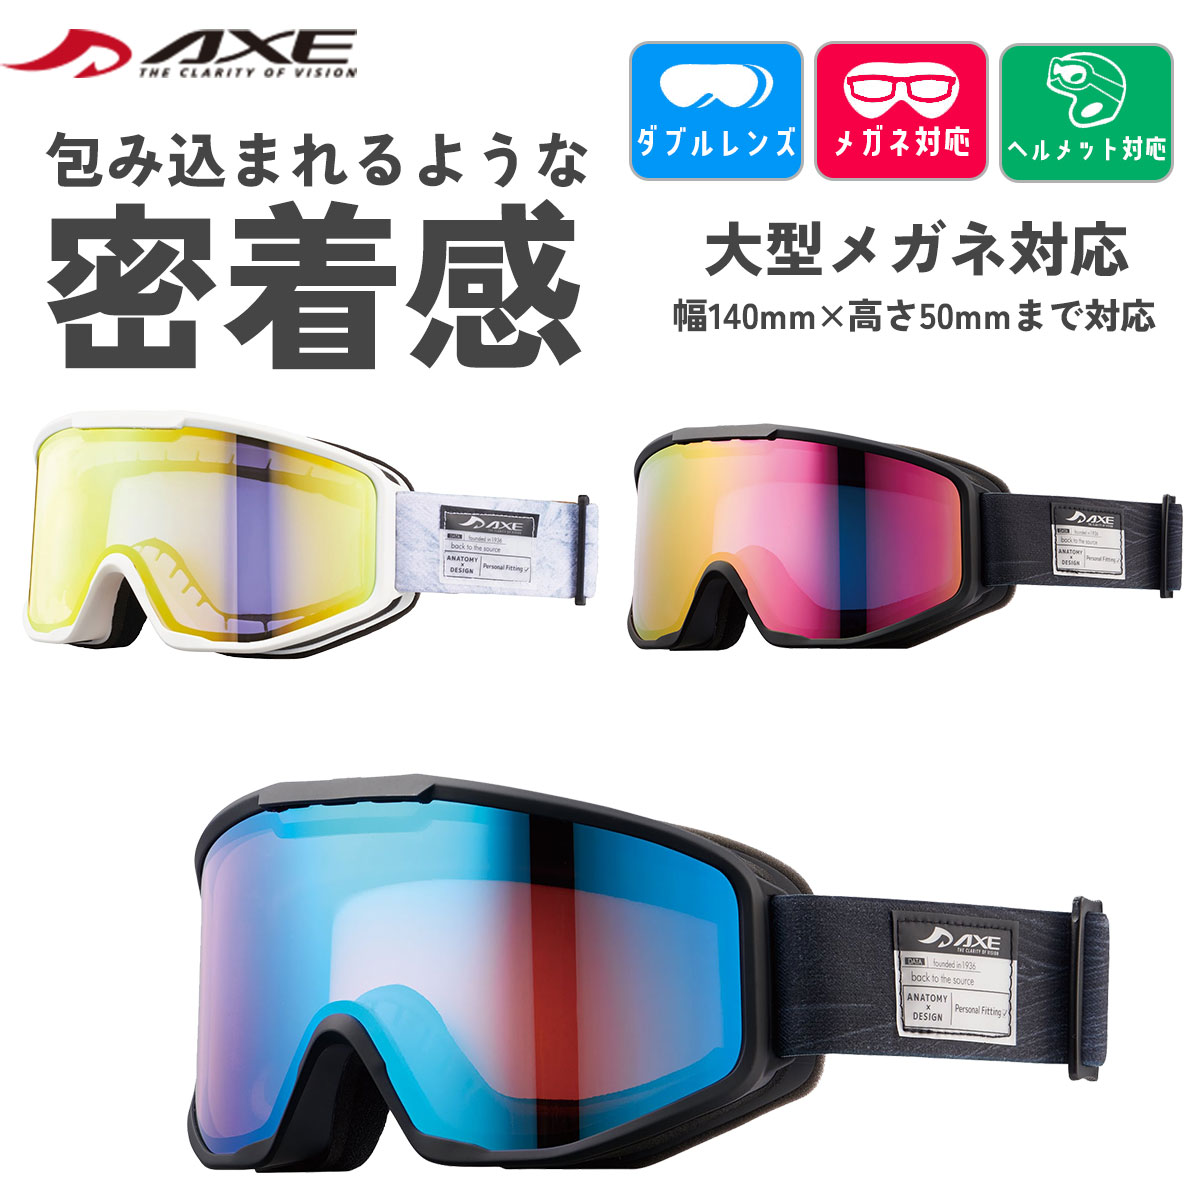 AXE アックス スノーゴーグル スノボ スノボー スキー スノーボード ゴーグル 眼鏡対応 おすすめ ヘルメット対応 くもり止め加工 ダブルレンズ ミラーレンズ UVカット 軽量 メンズ レディース ユニセックス 男性 女性 AX800-WCM